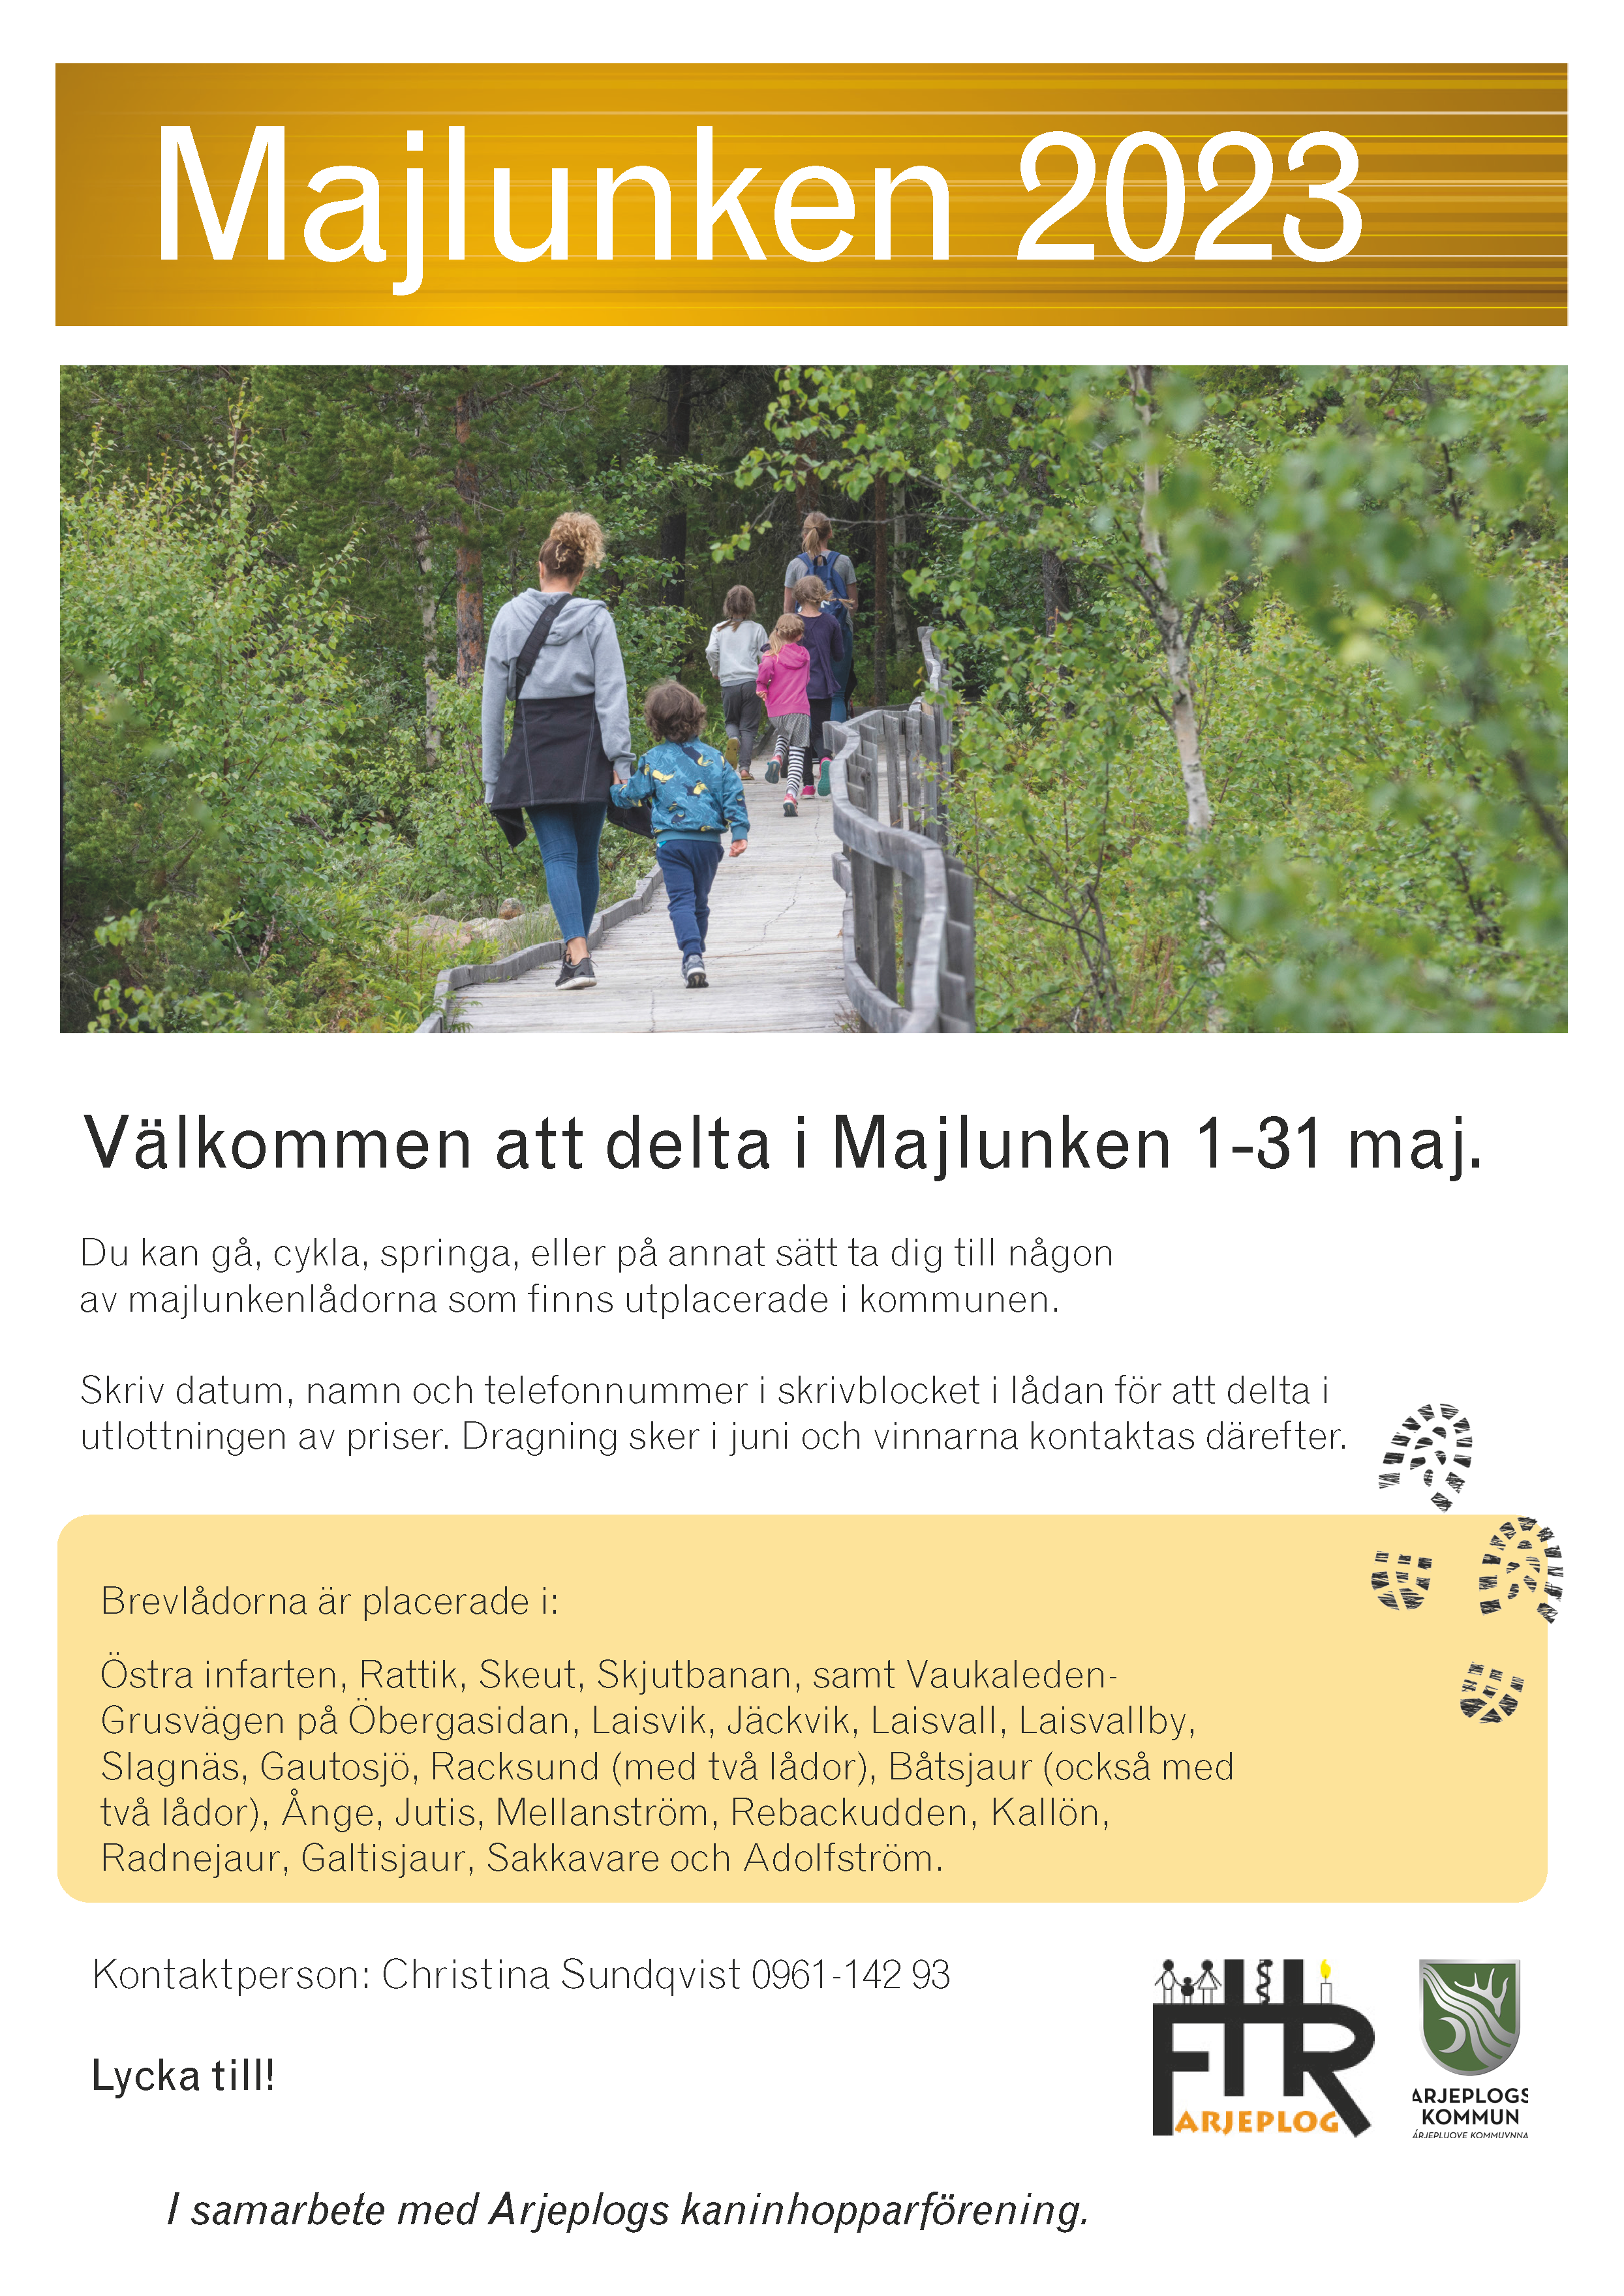 Affisch för majlunken 2023. Ett par personer som går på en spångad led genom en ung skog.